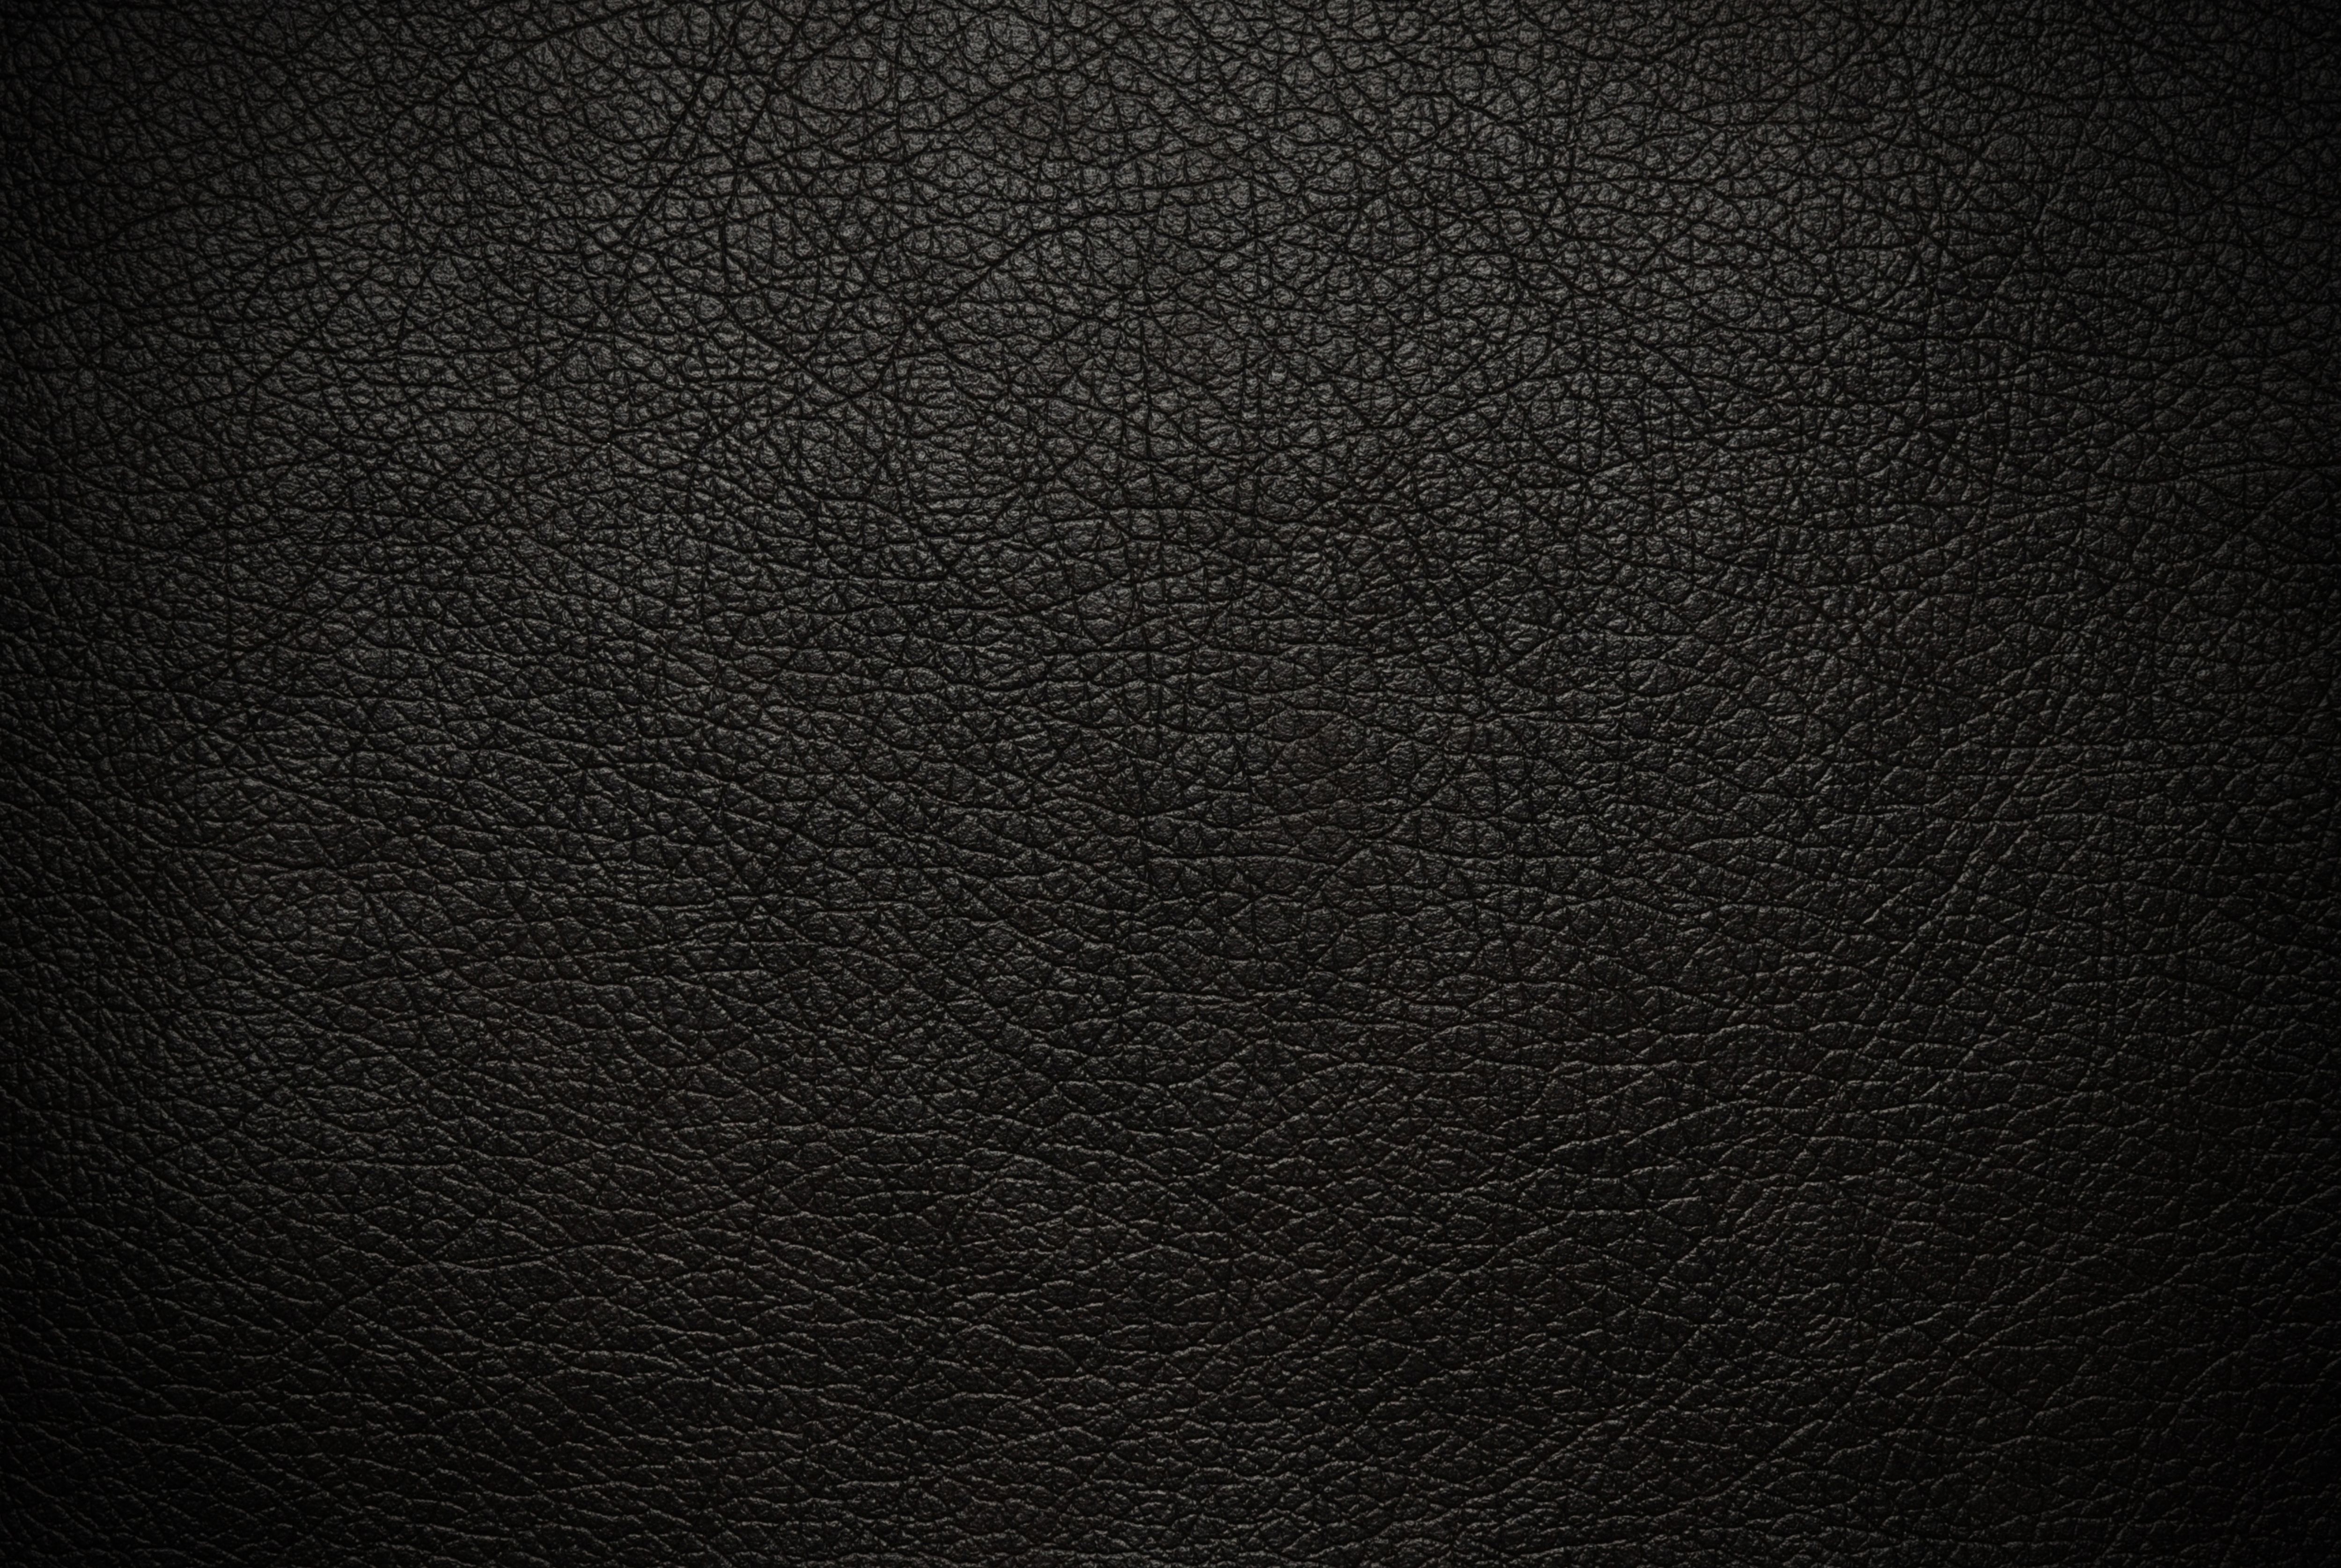 schwarze strukturierte tapete,schwarz,braun,leder,muster,textil 